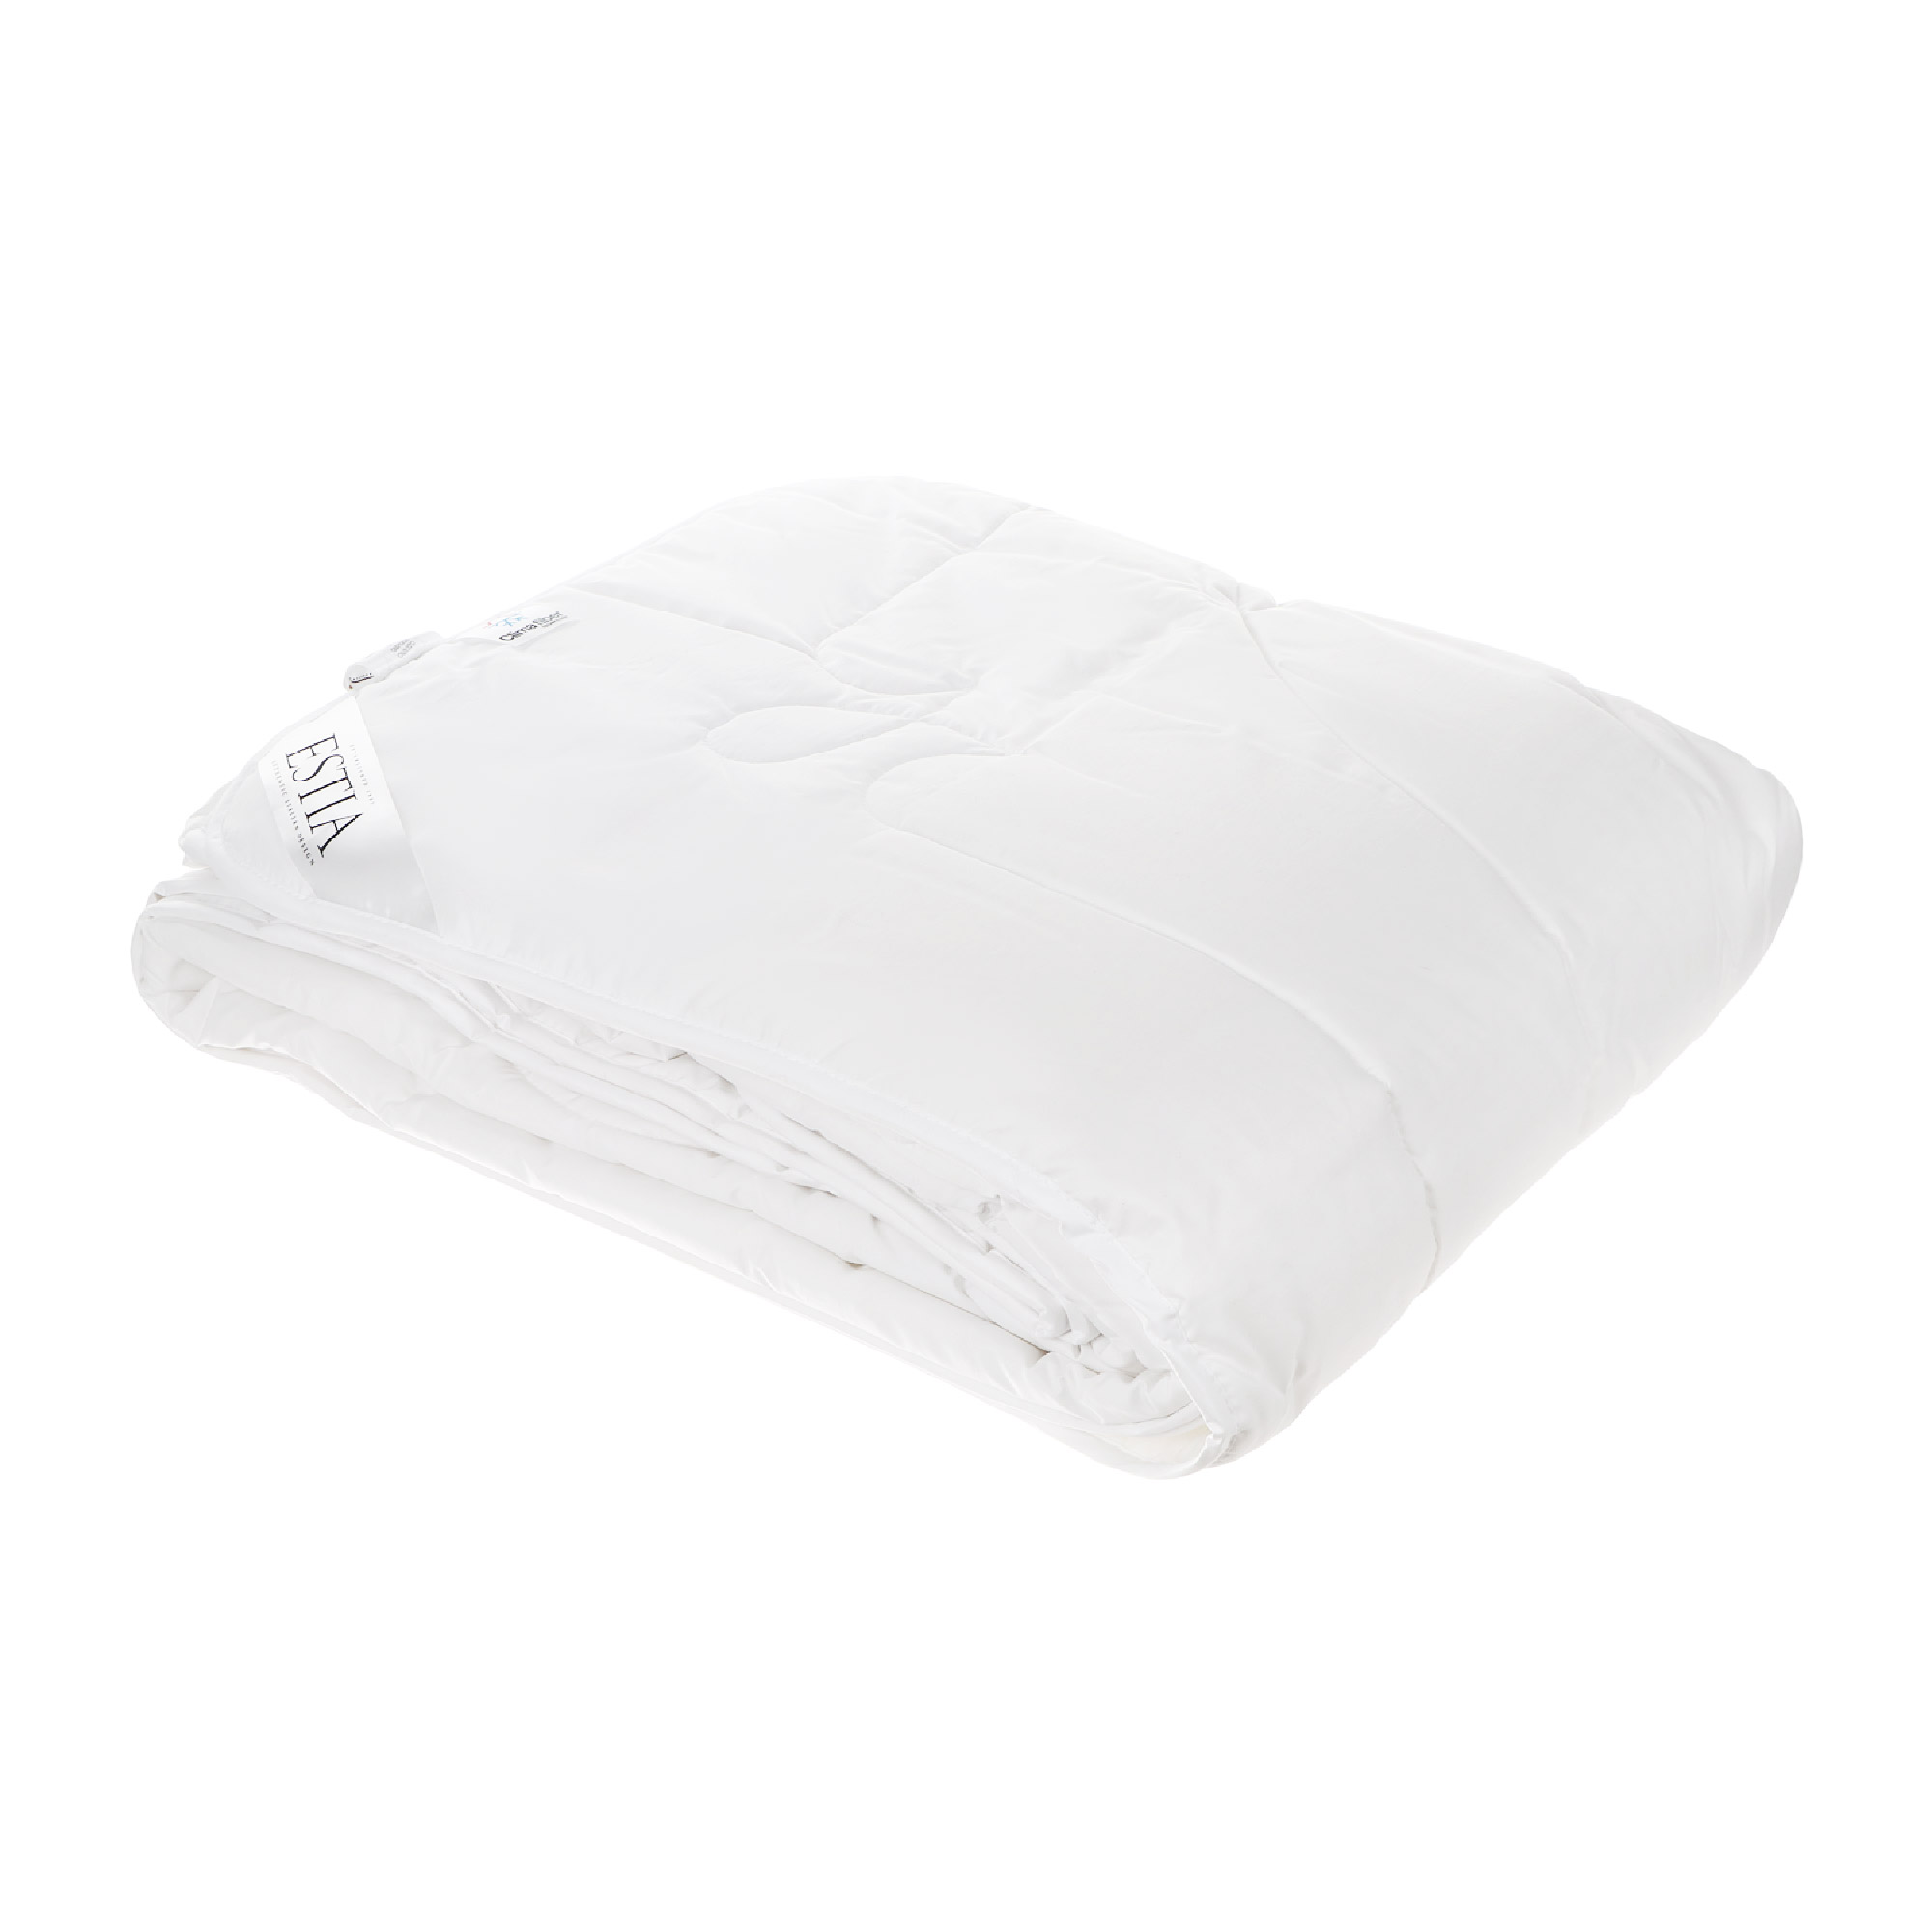 Одеяло Estia Фальтерона легкое 200х210 см белое, цвет белый, размер 200х210 см - фото 6